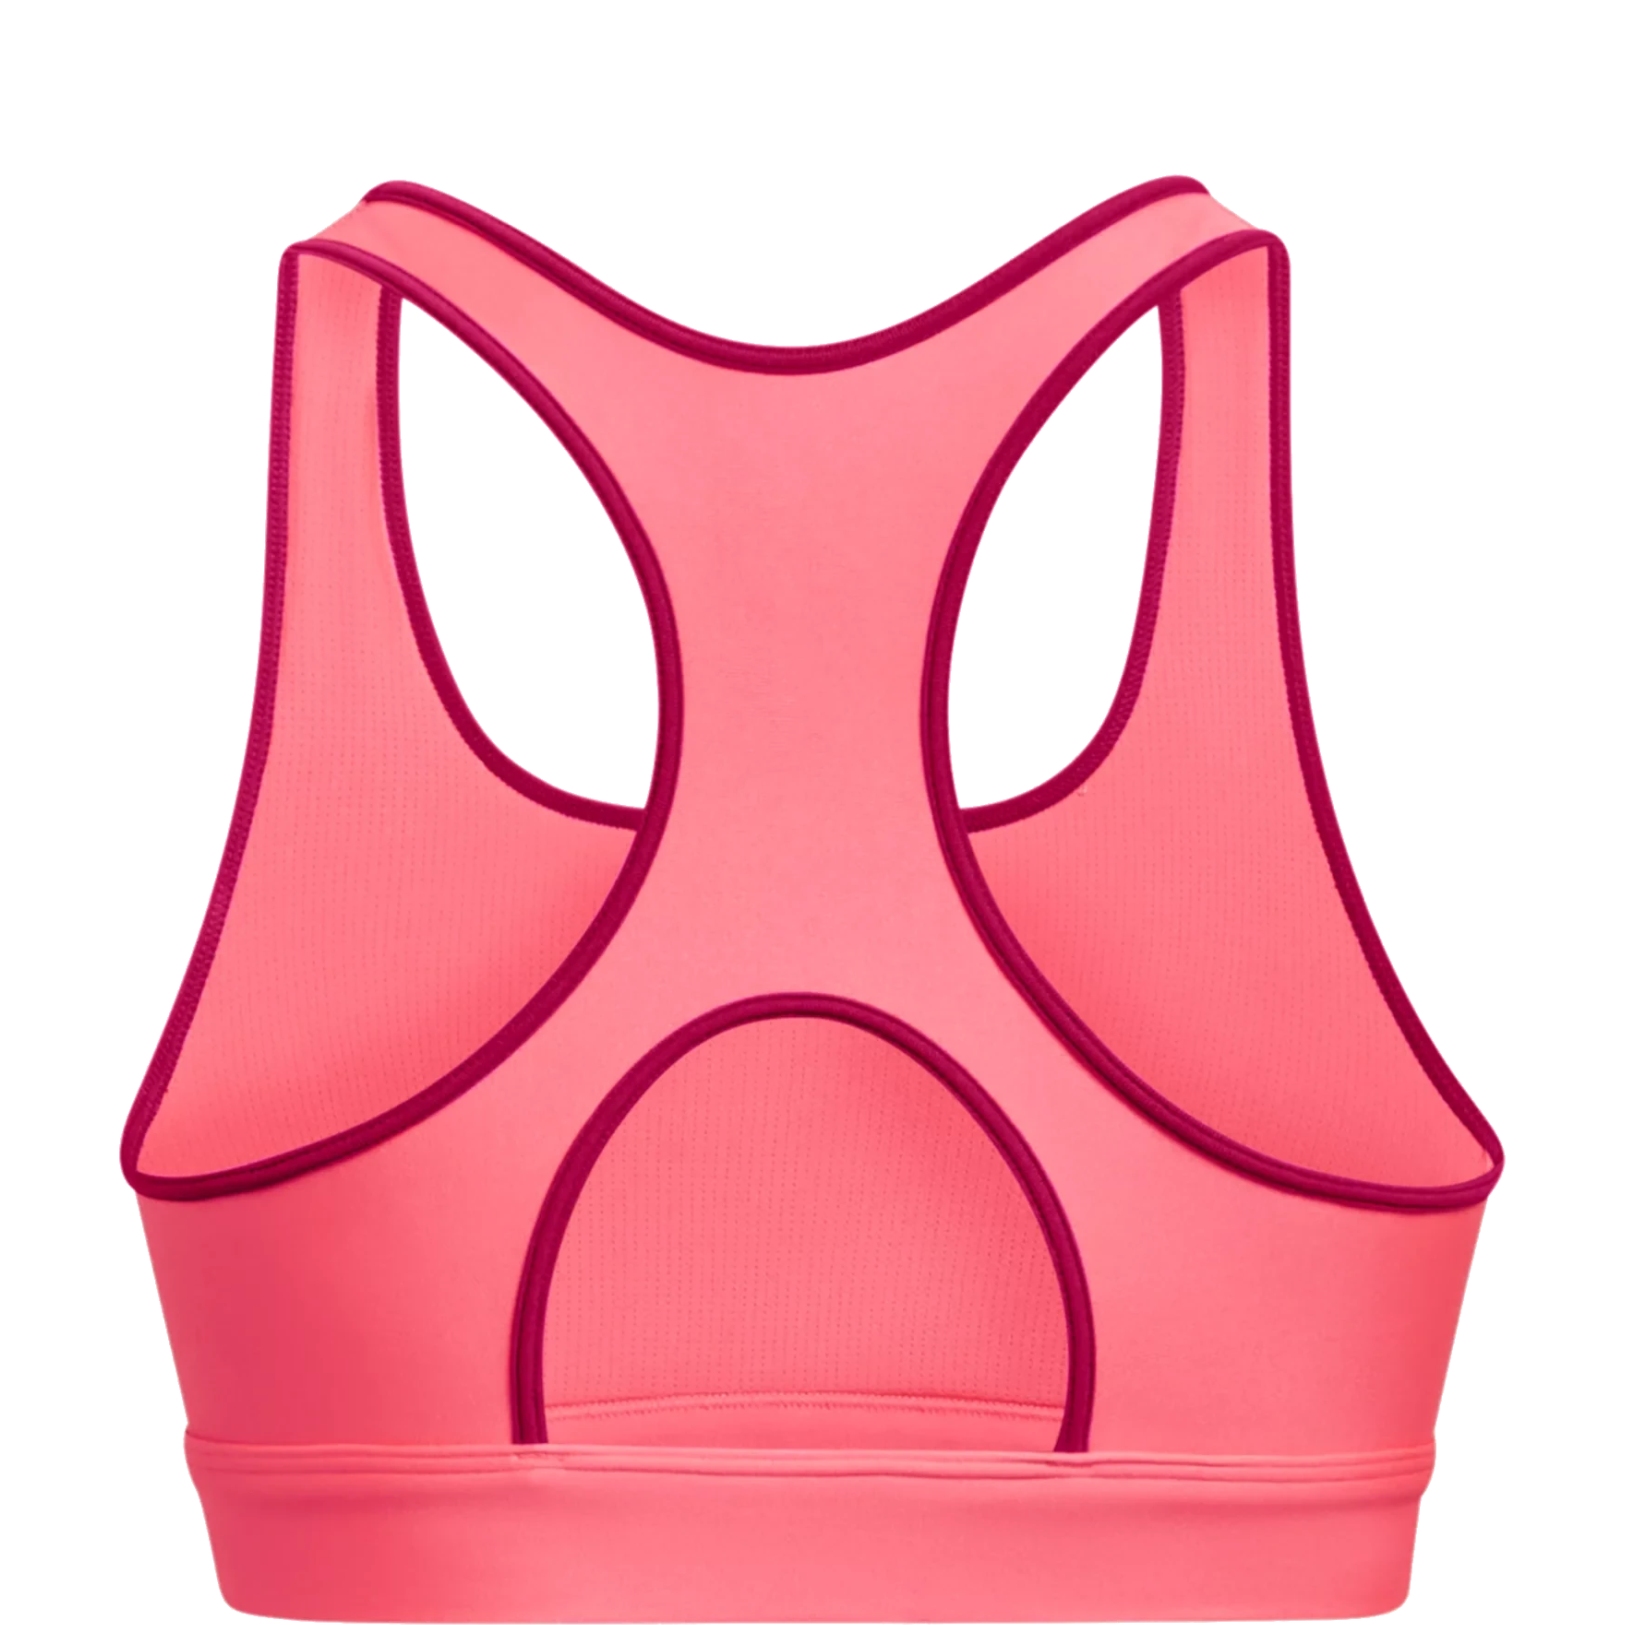  Infinity Pintuck Mid, pink - sports bra for women - UNDER  ARMOUR - 38.60 € - outdoorové oblečení a vybavení shop